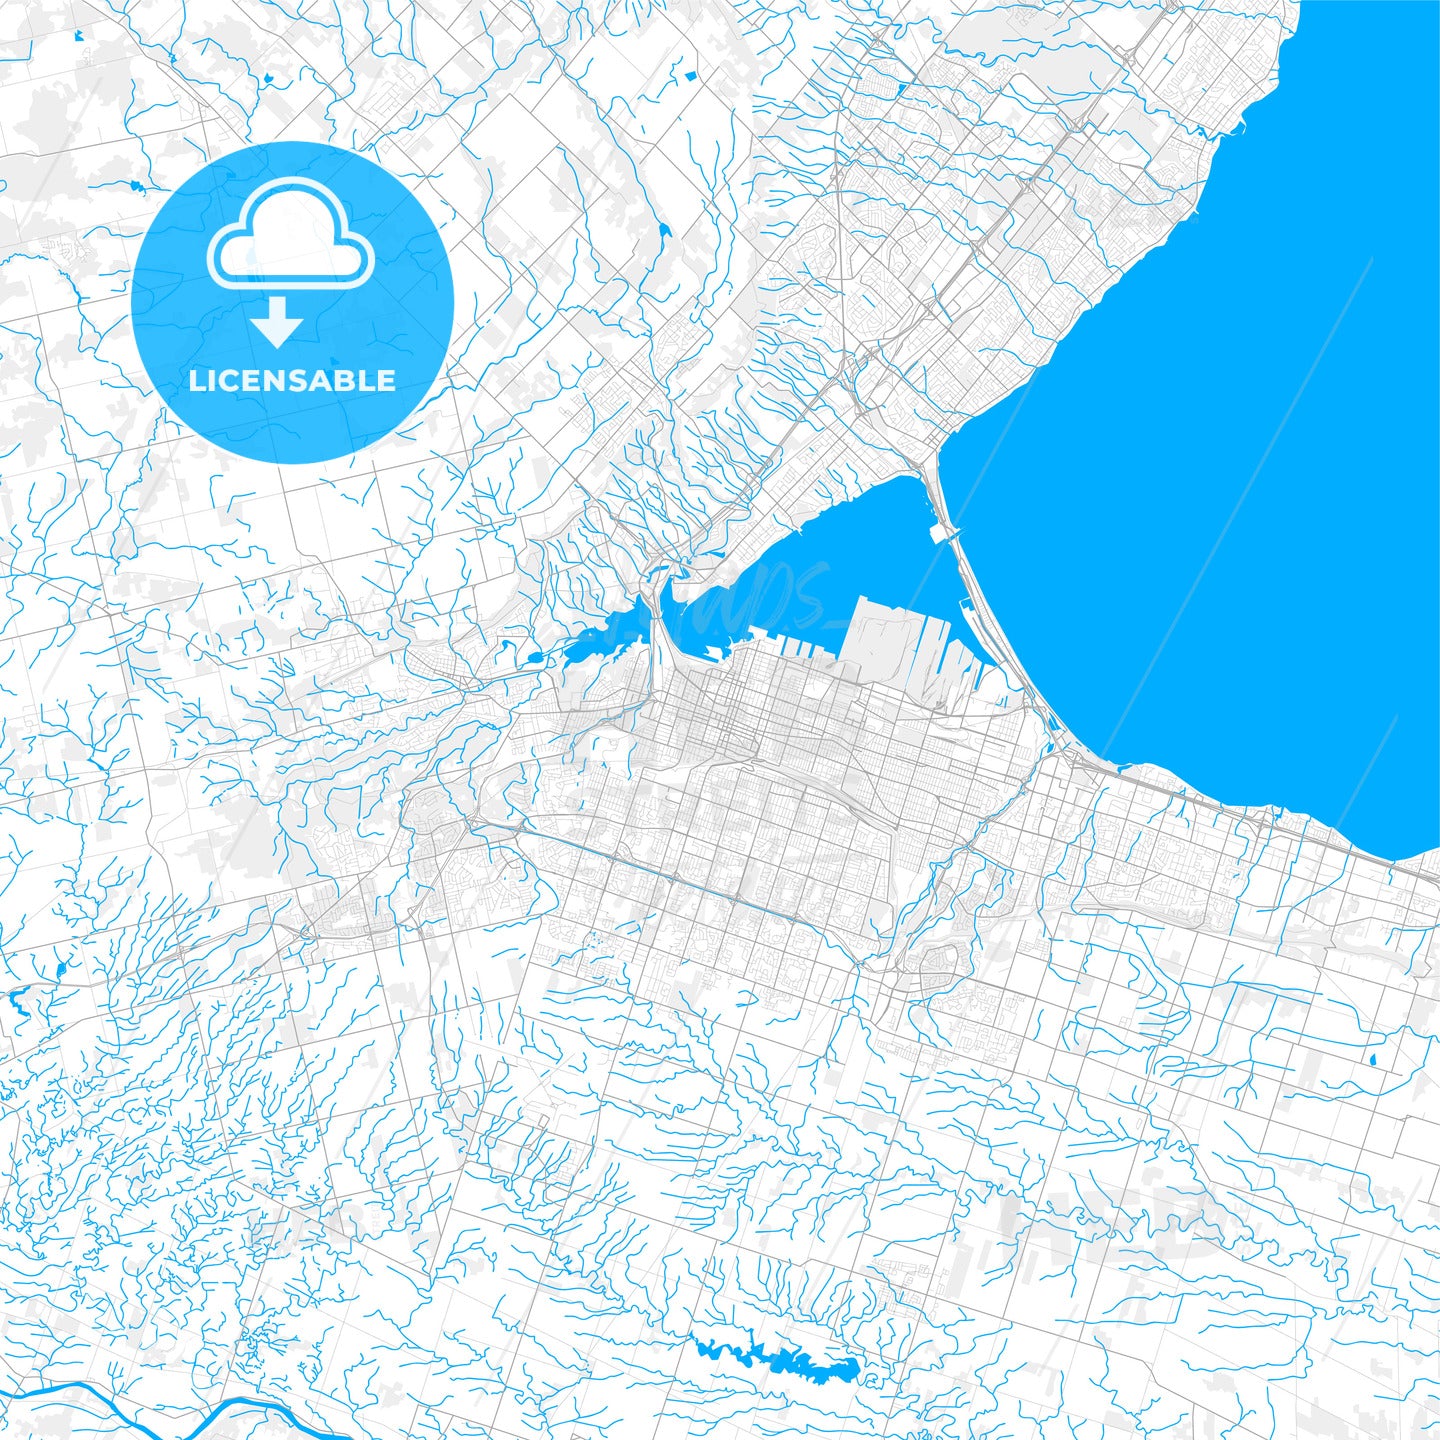 Rich detailed vector map of Hamilton, Ontario, Canada